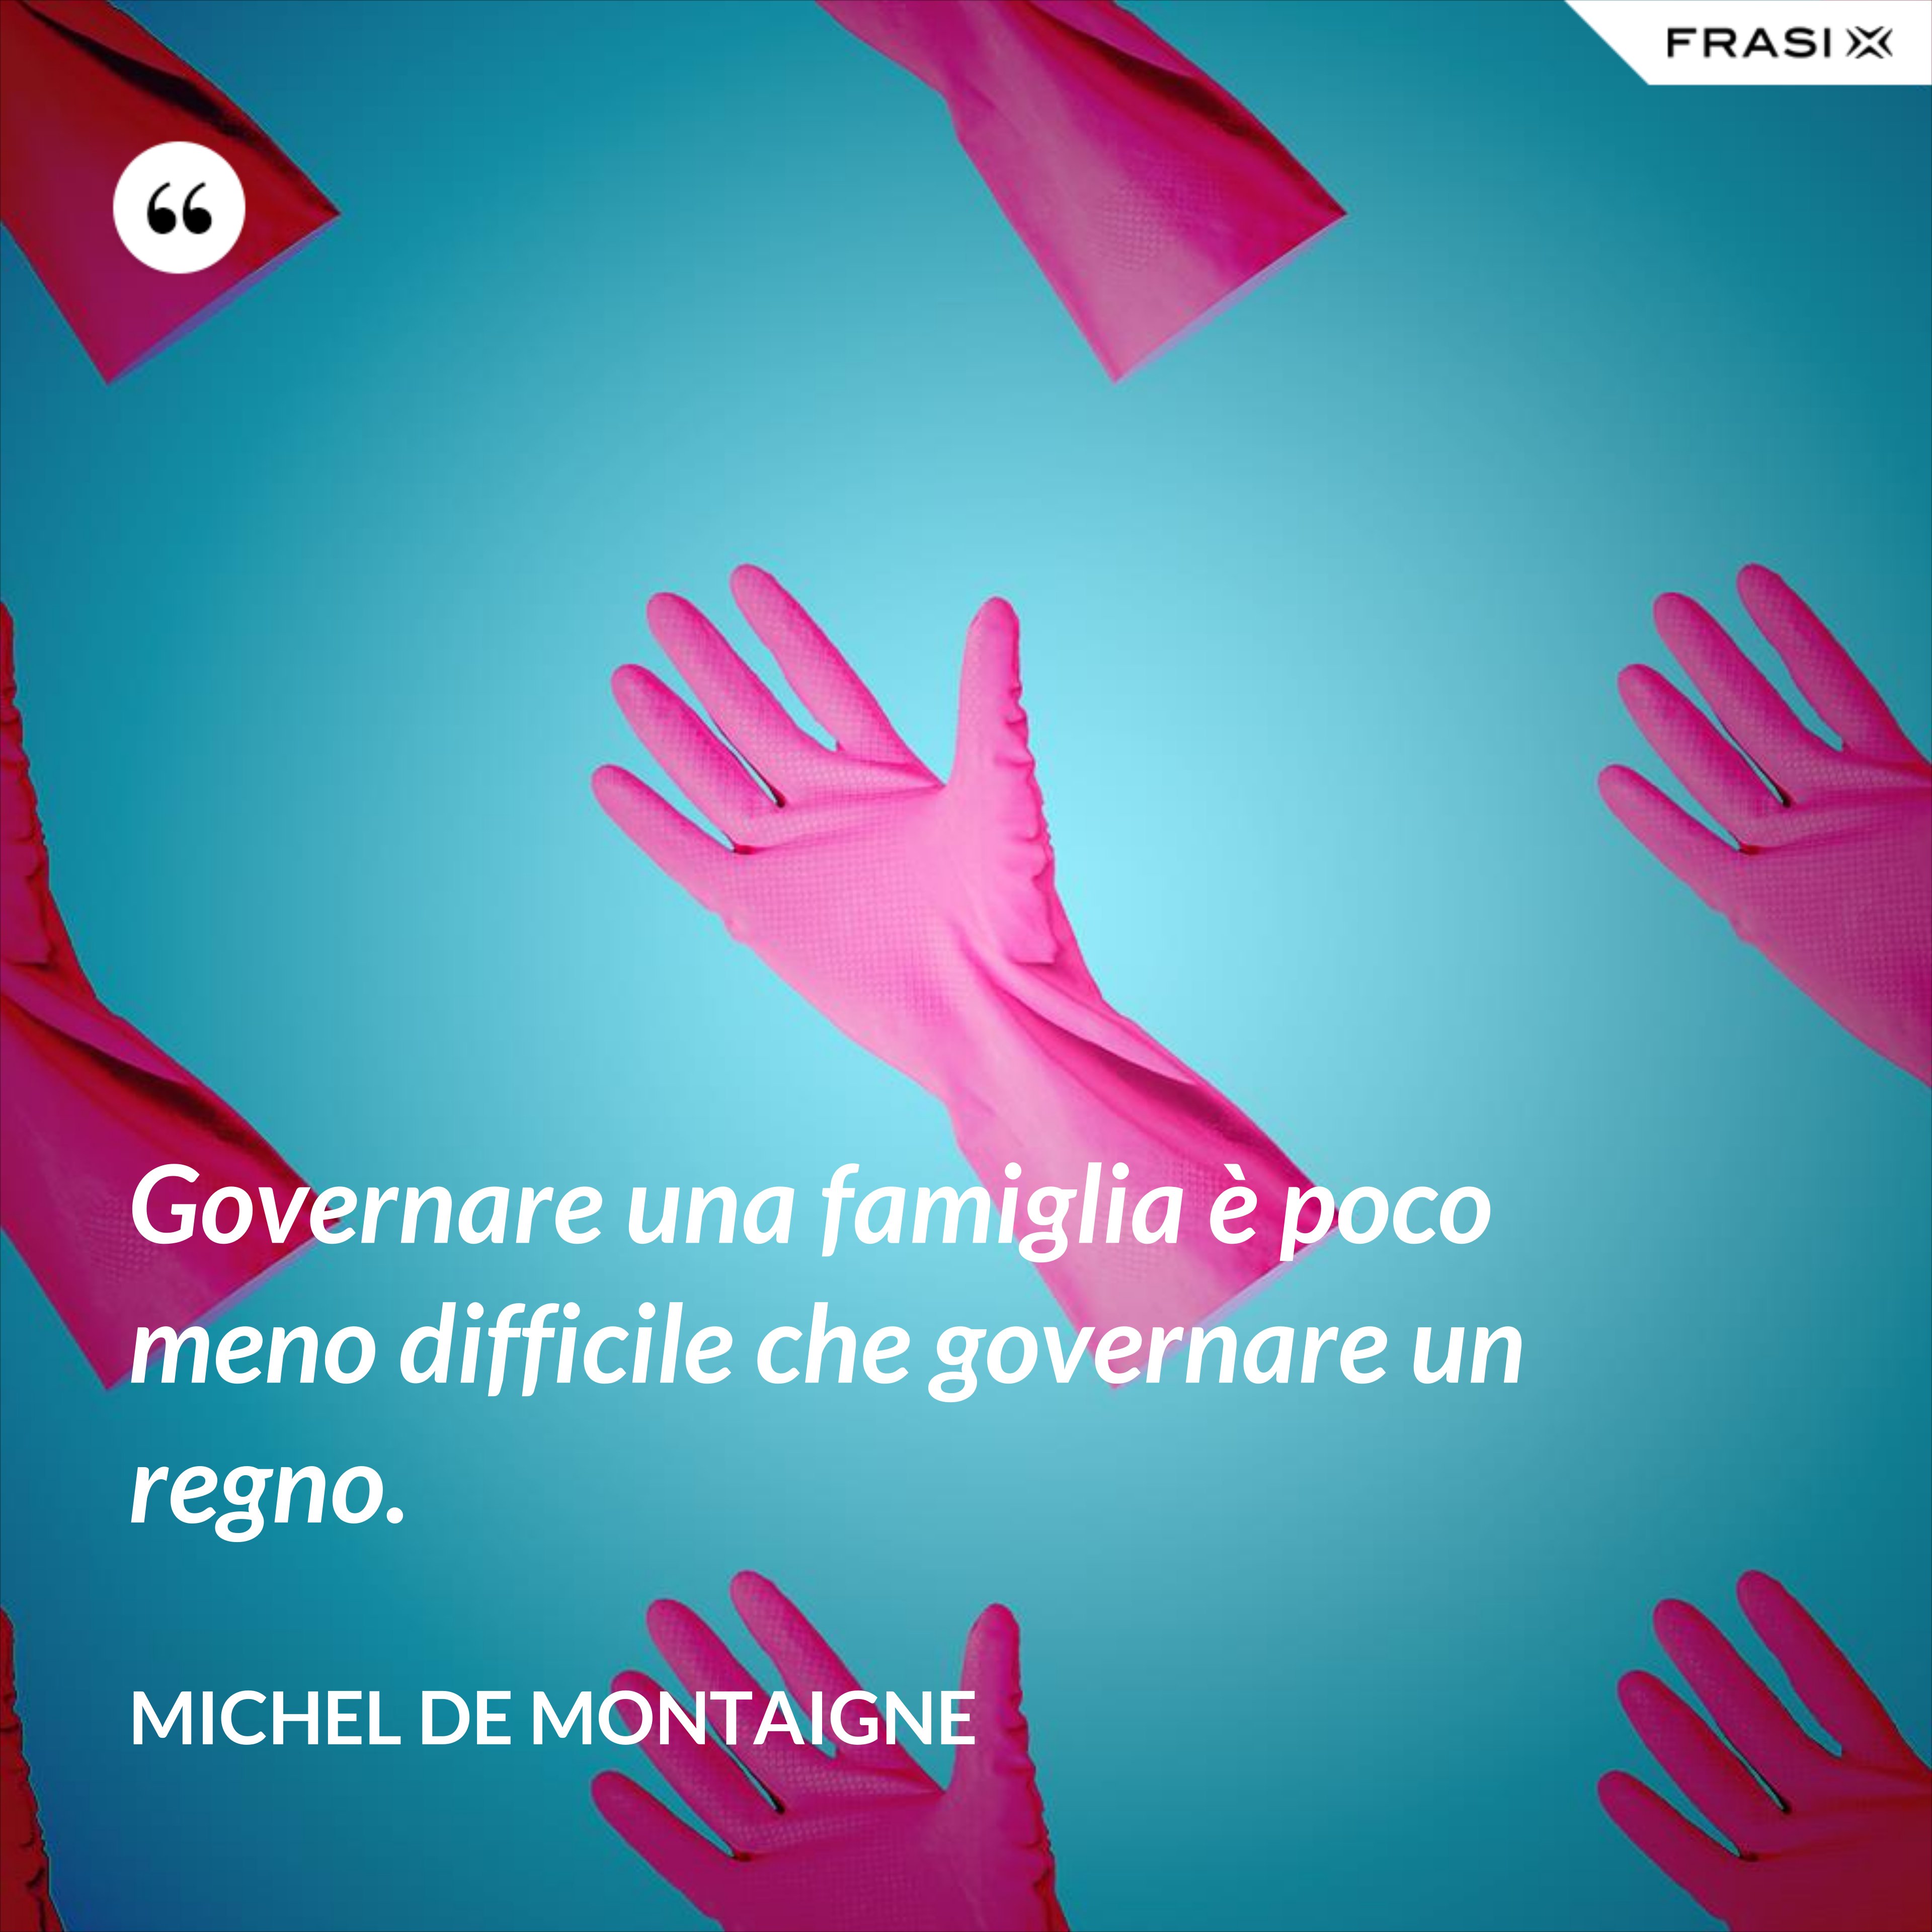 Governare una famiglia è poco meno difficile che governare un regno. - Michel de Montaigne